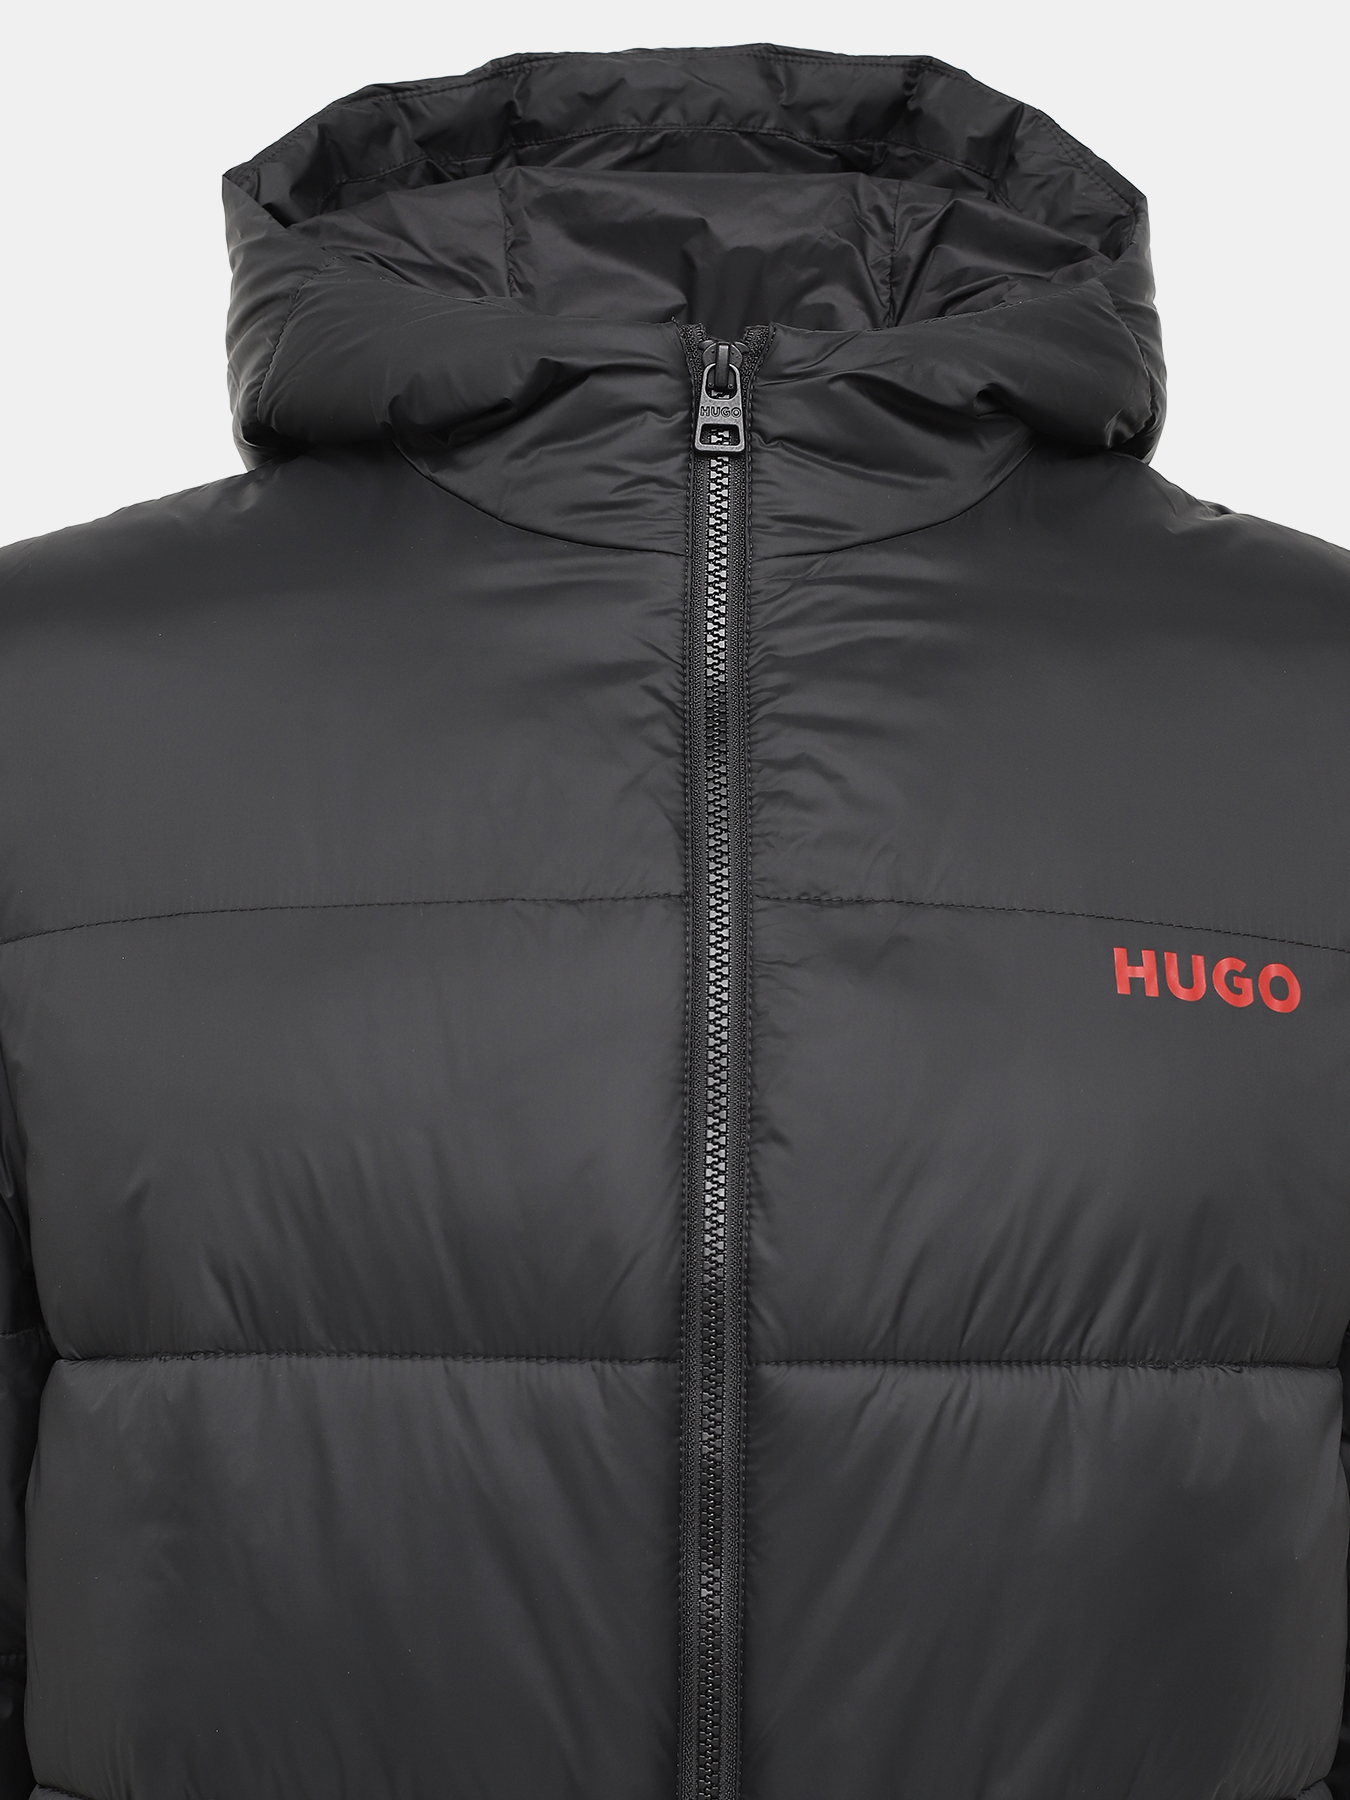 Удлиненная куртка Mati HUGO 426043-044, цвет черный, размер 50-52 - фото 5